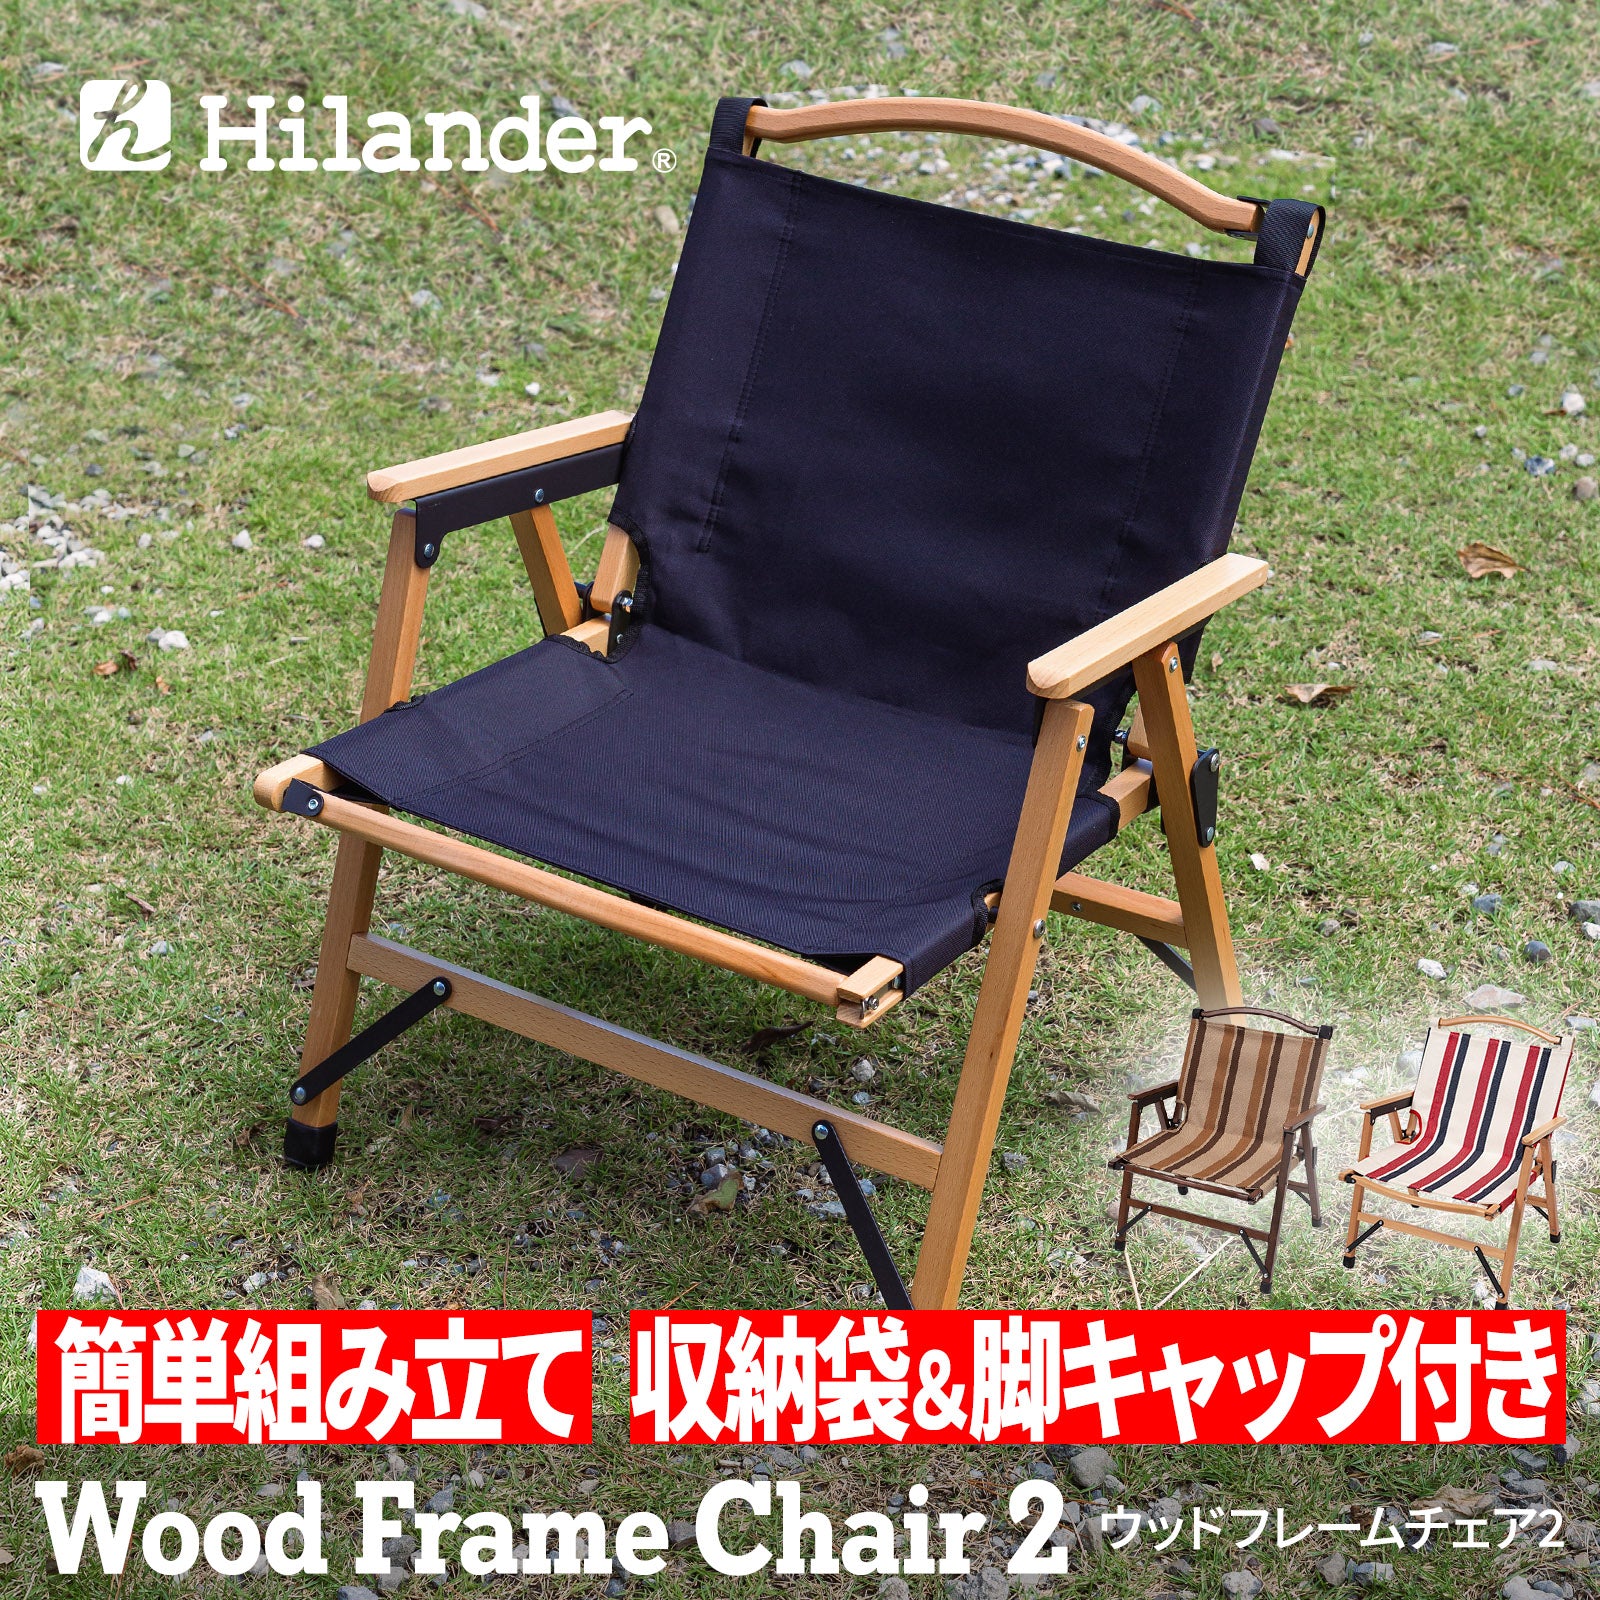 Hilander(ハイランダー) ウッドフレームチェア -2脚セット-